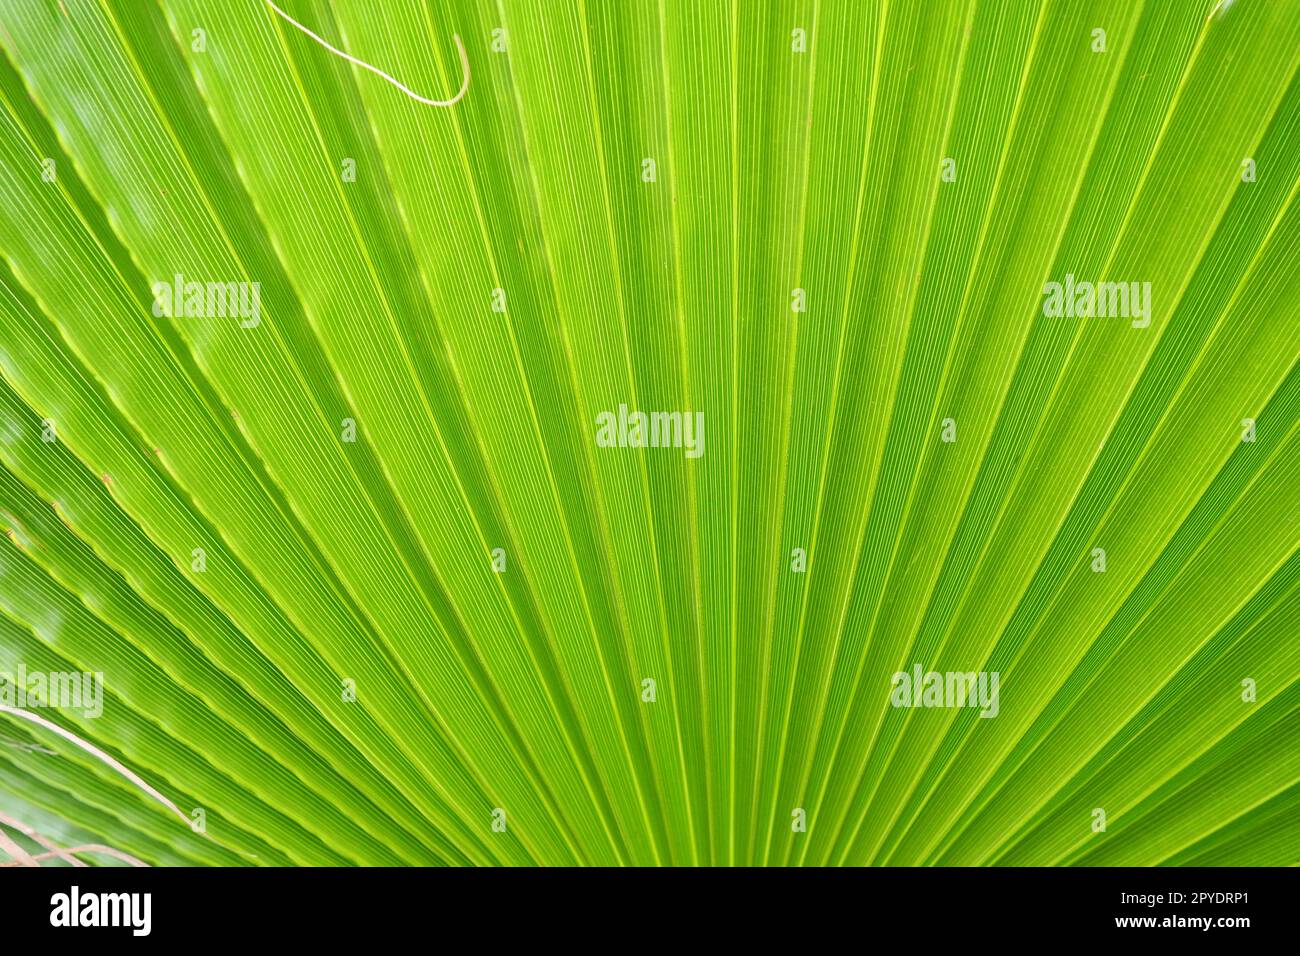 La trama delle foglie di palma è caratterizzata da ombre e luci. Foglie di palma di colore verde e giallo chiaro. Splendido sfondo tropicale. Turismo balneare estivo. Foglie pieghettate. Foto Stock